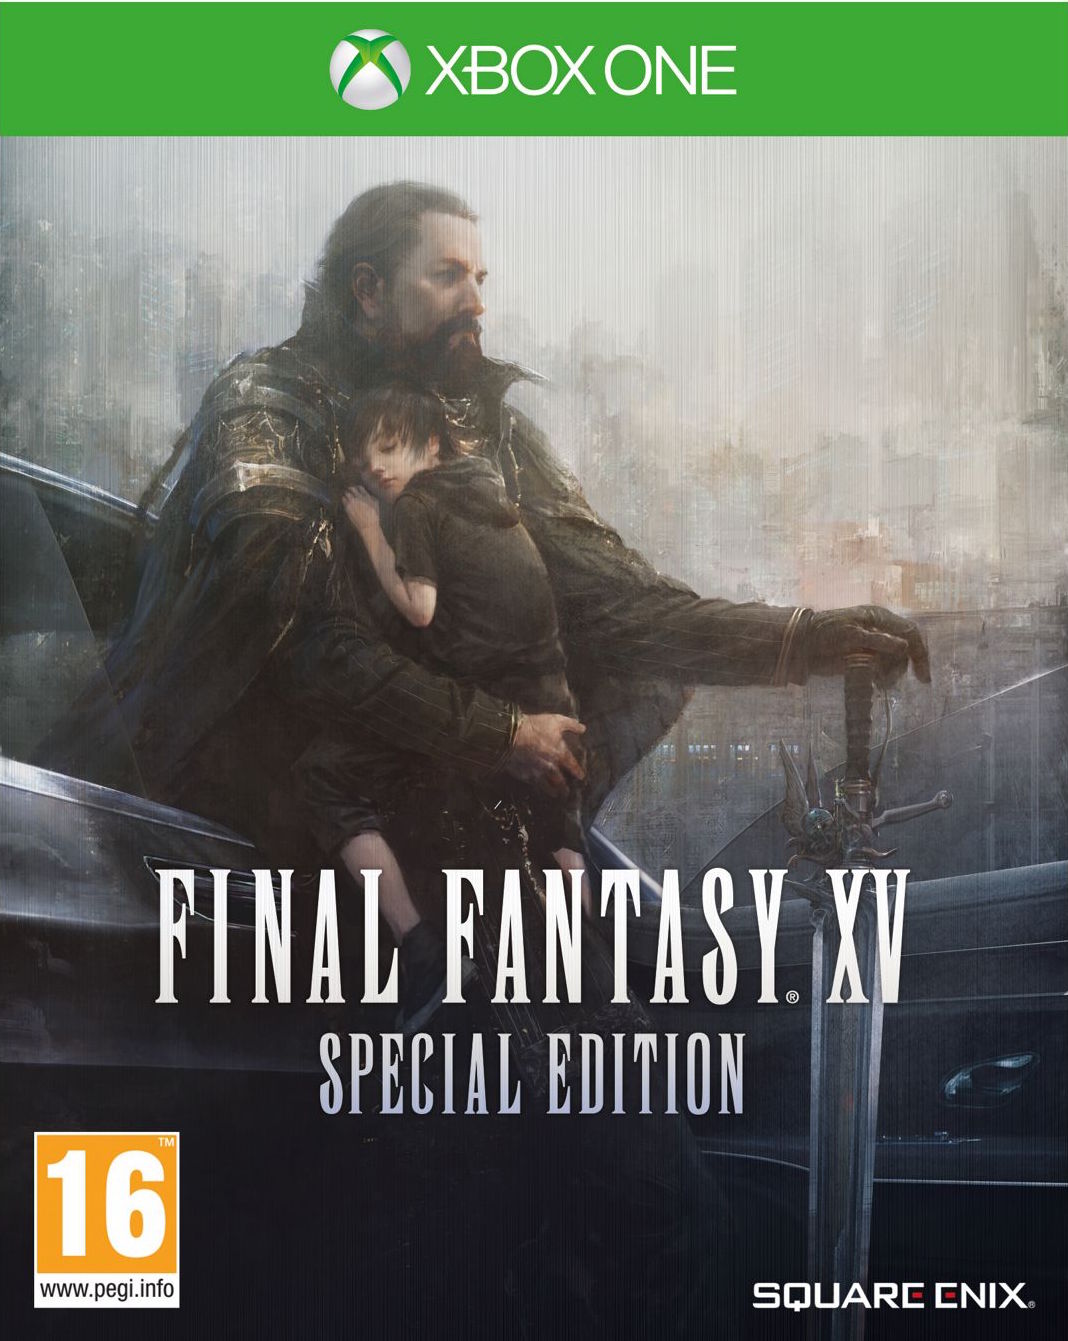 Final Fantasy XV Special Edition (Xbox One), Square Enix